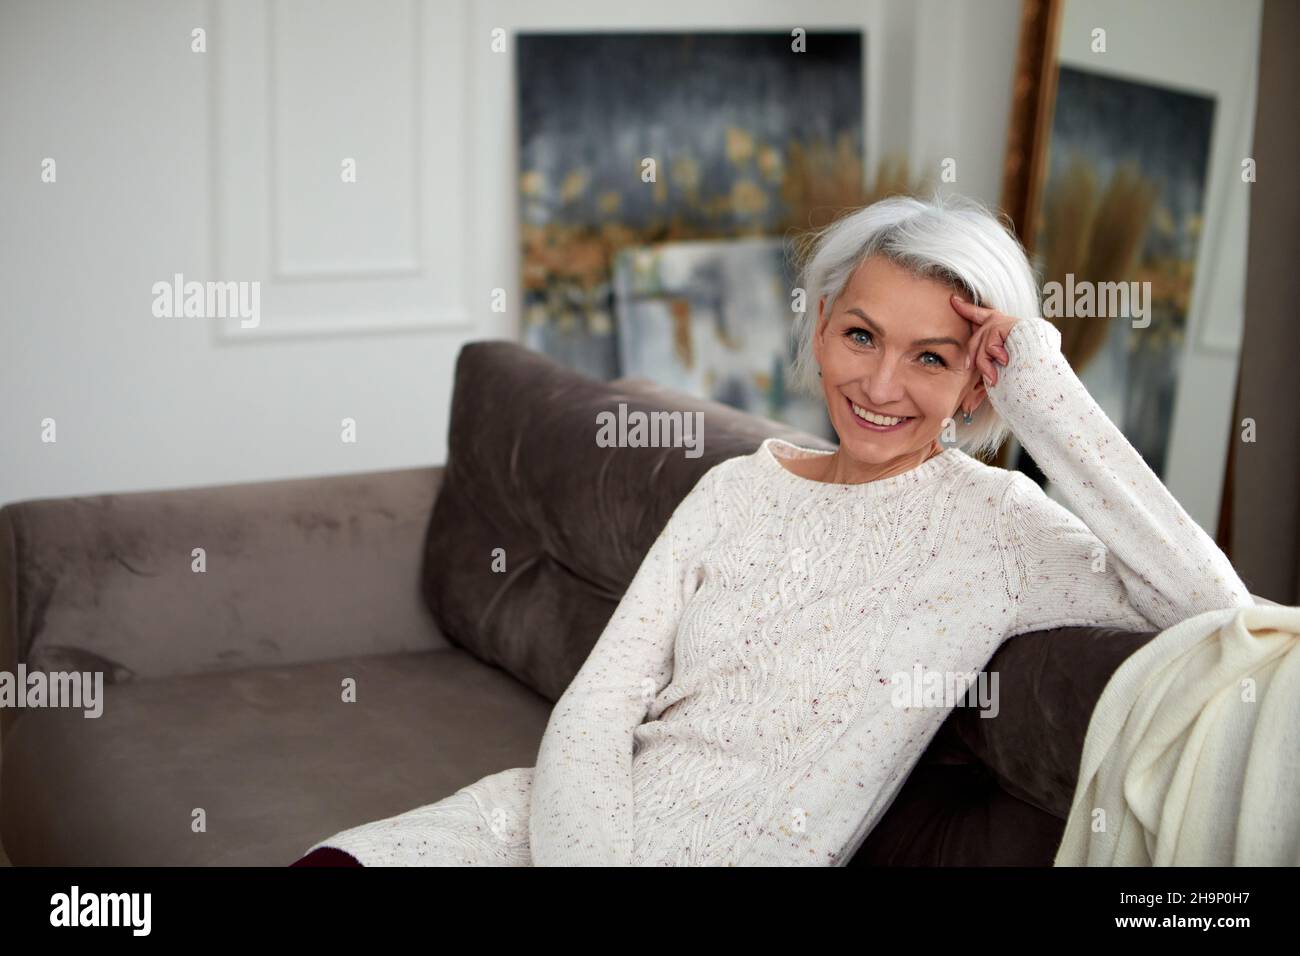 Charmante reife Frau in Strickpullover und mit grauen Haaren sitzt auf einem bequemen Sofa und lehnt sich an der Hand, während sie mit einem Lächeln auf die Kamera blickt Stockfoto